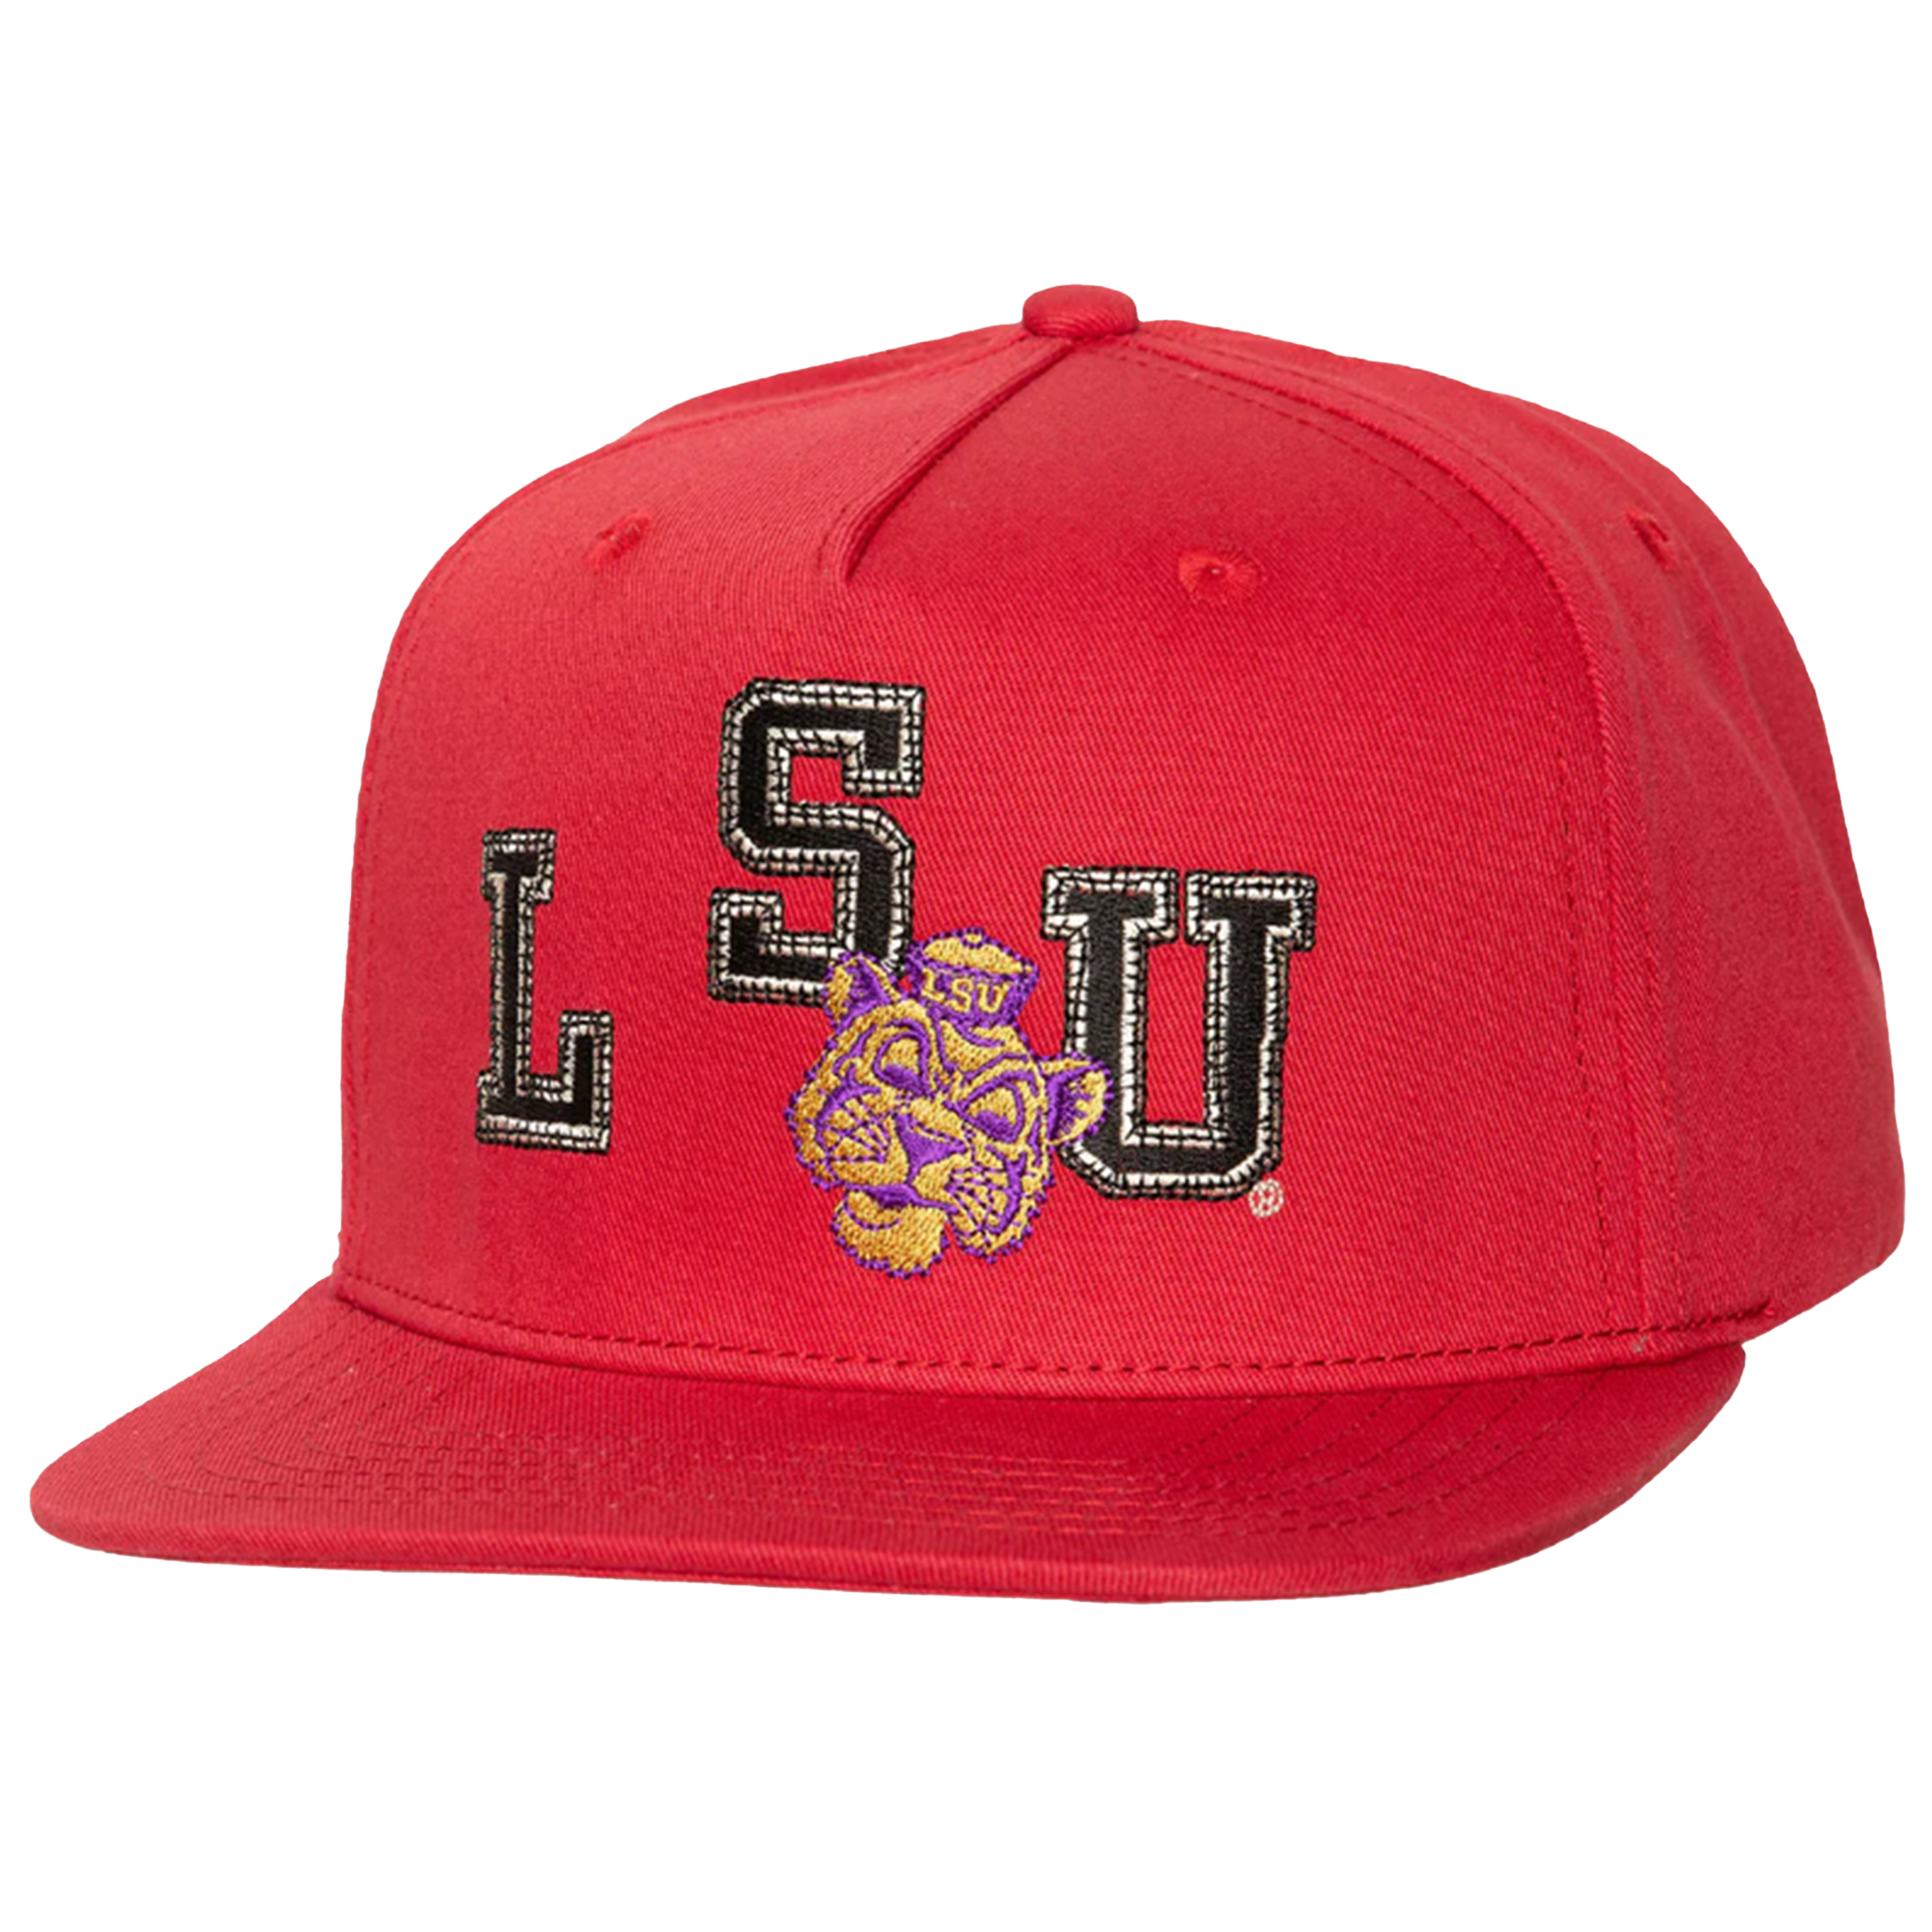 Travis Scott x Mitchell & Ness "LSU Tigers" Snapback Hat